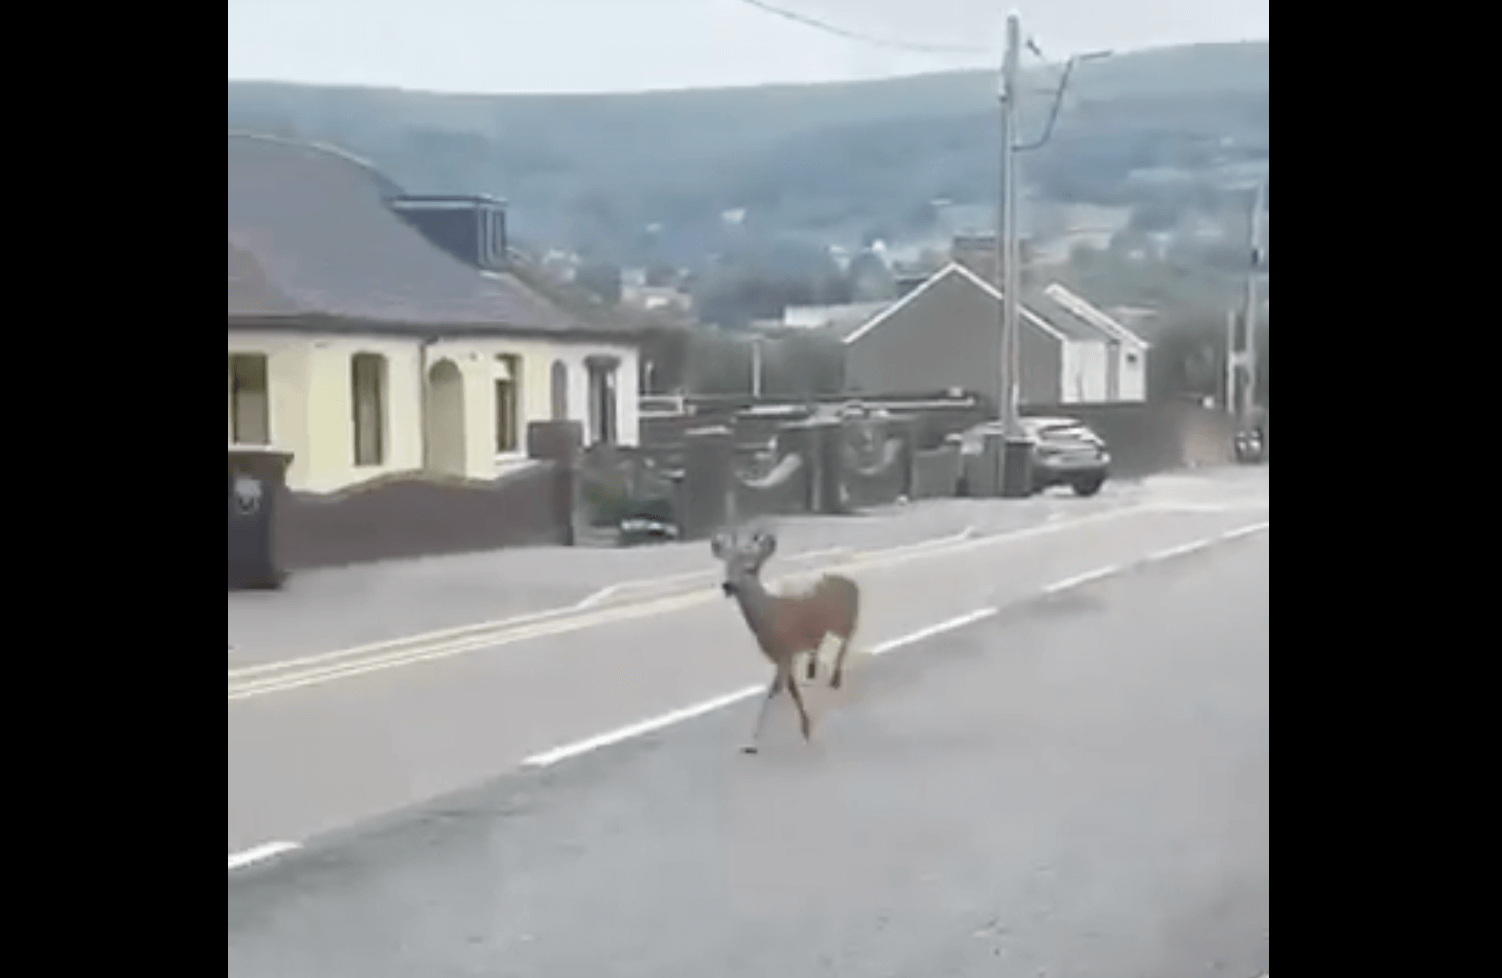 a deer running down a residential street